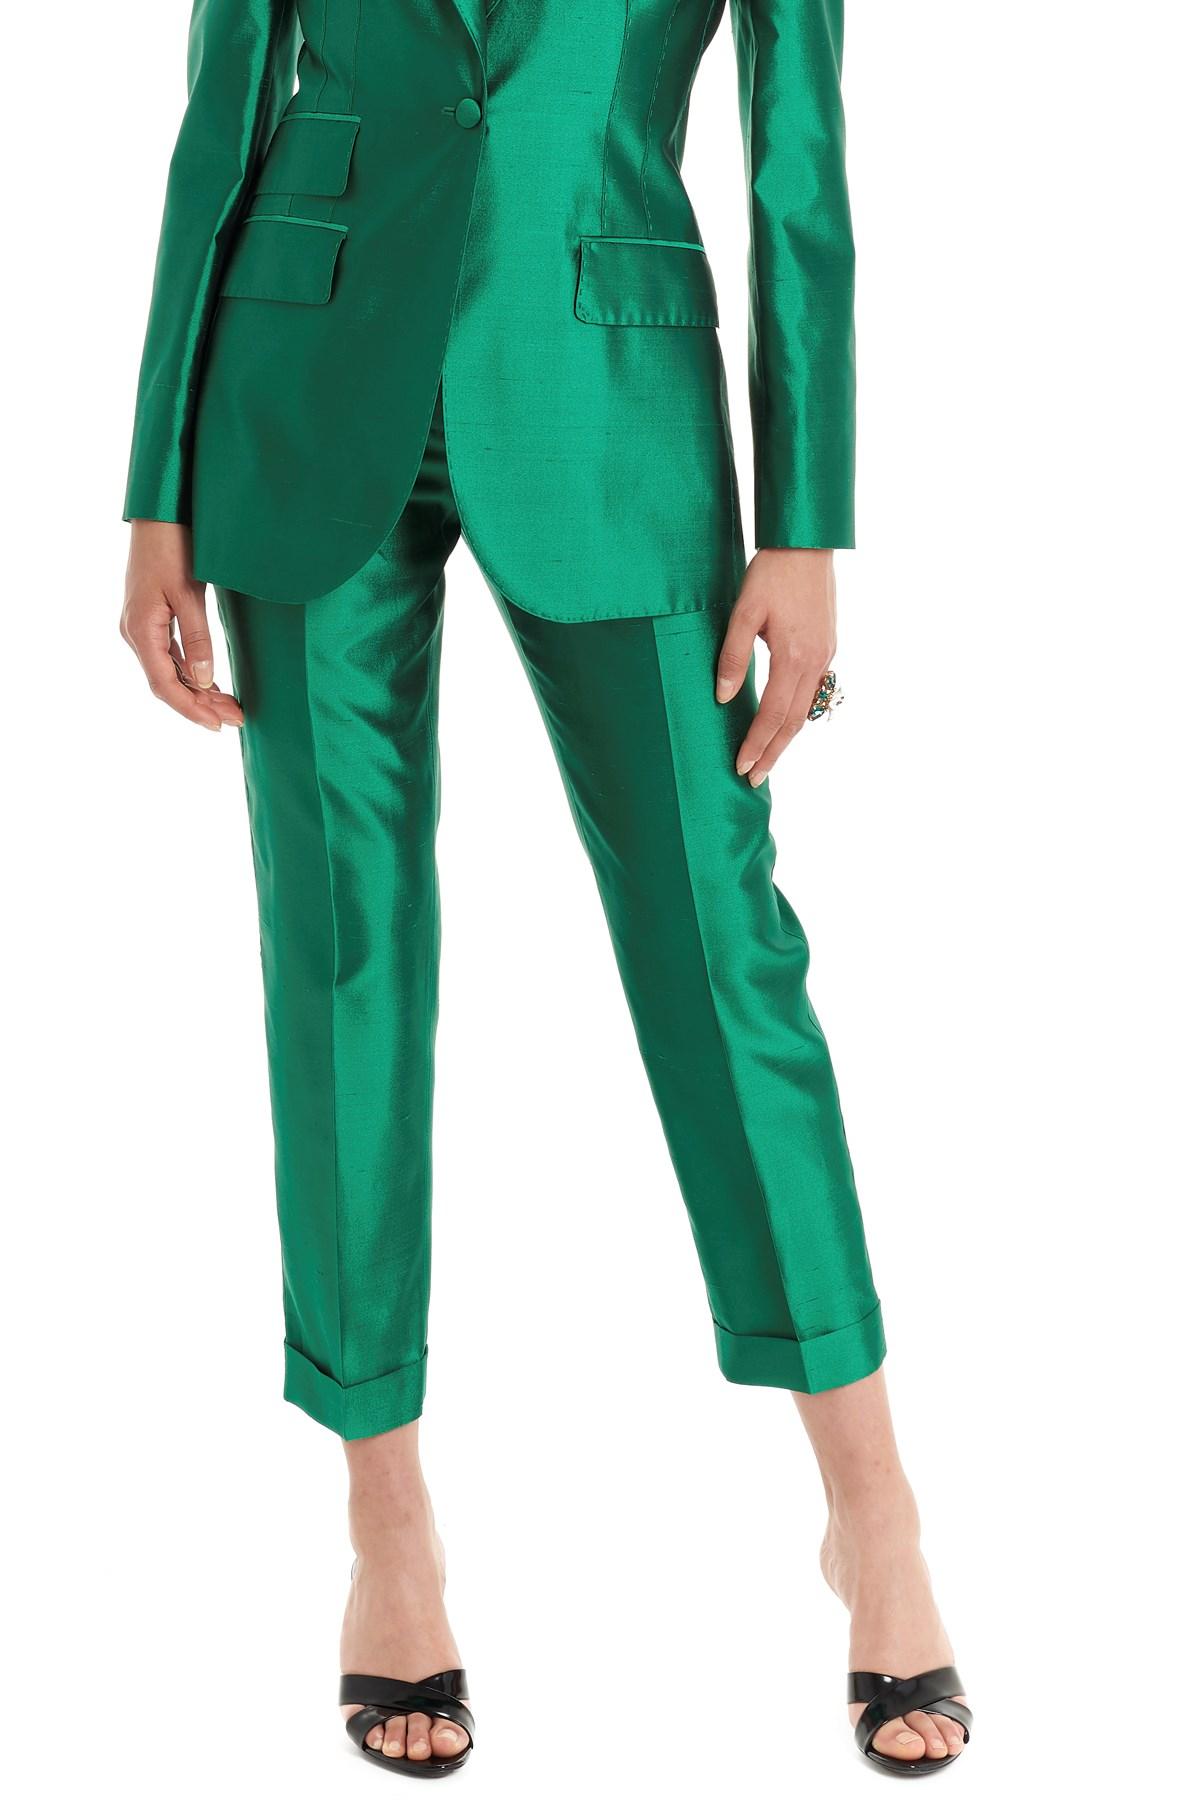 Dolce & Gabbana Silk 'mikado Shantung' Pants in Green - Lyst